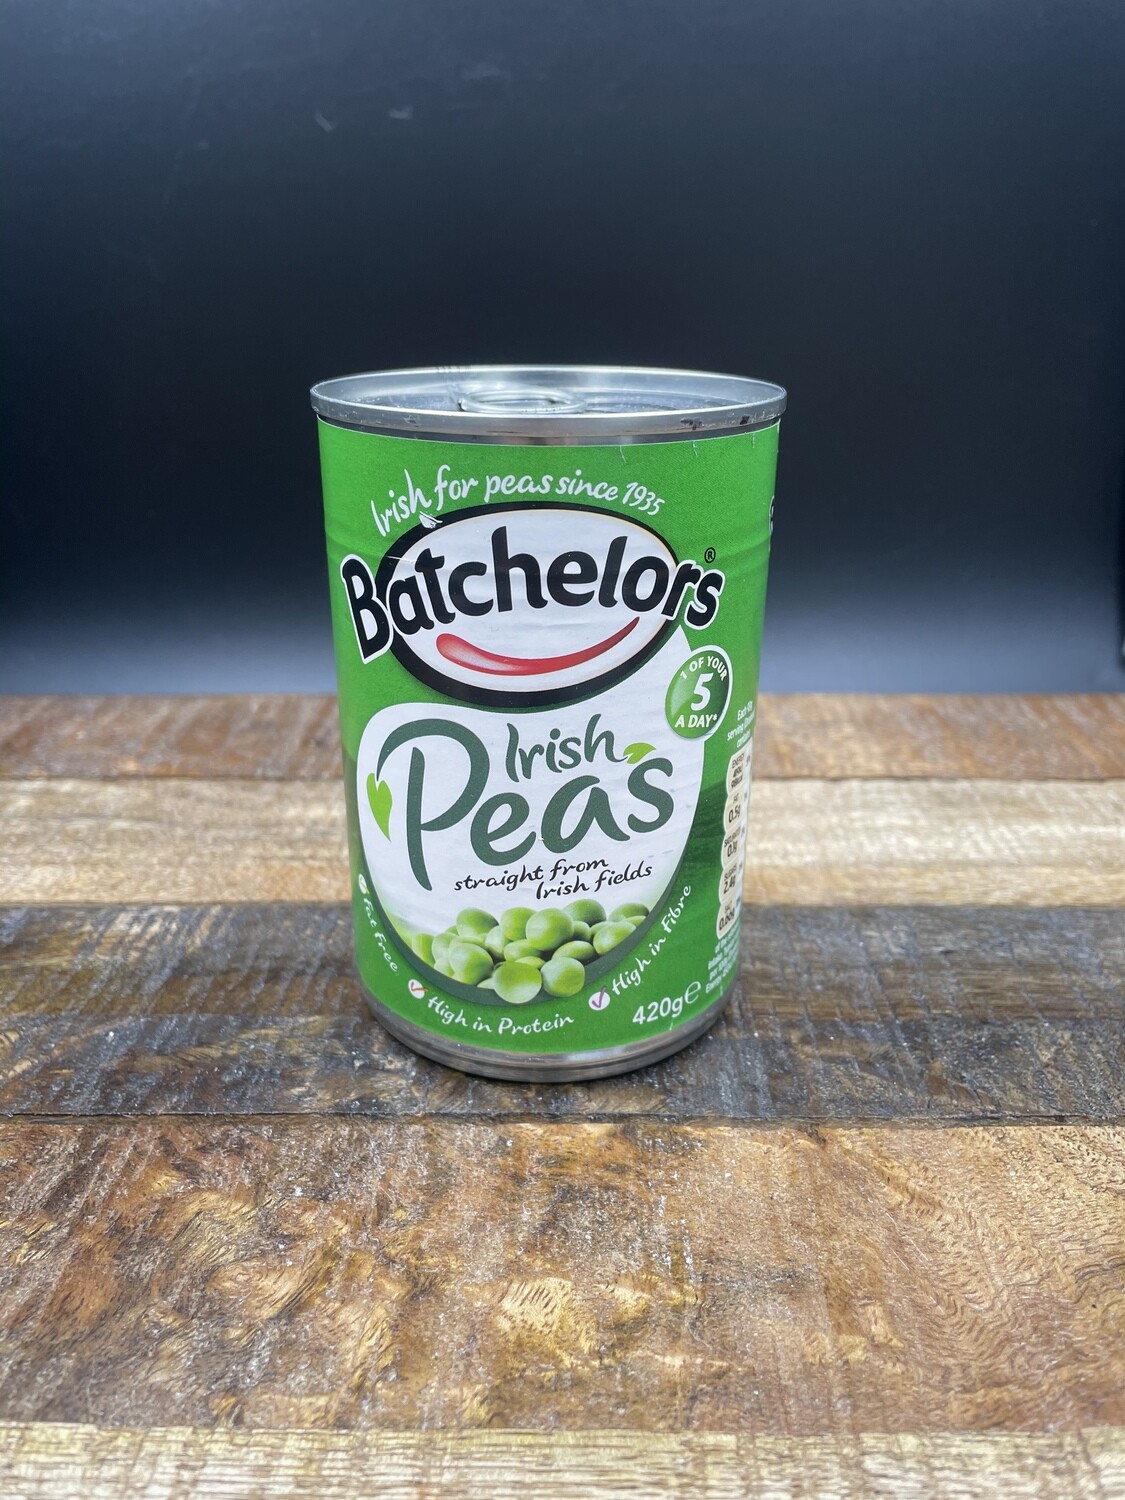 Batchelors Irish Peas 420g